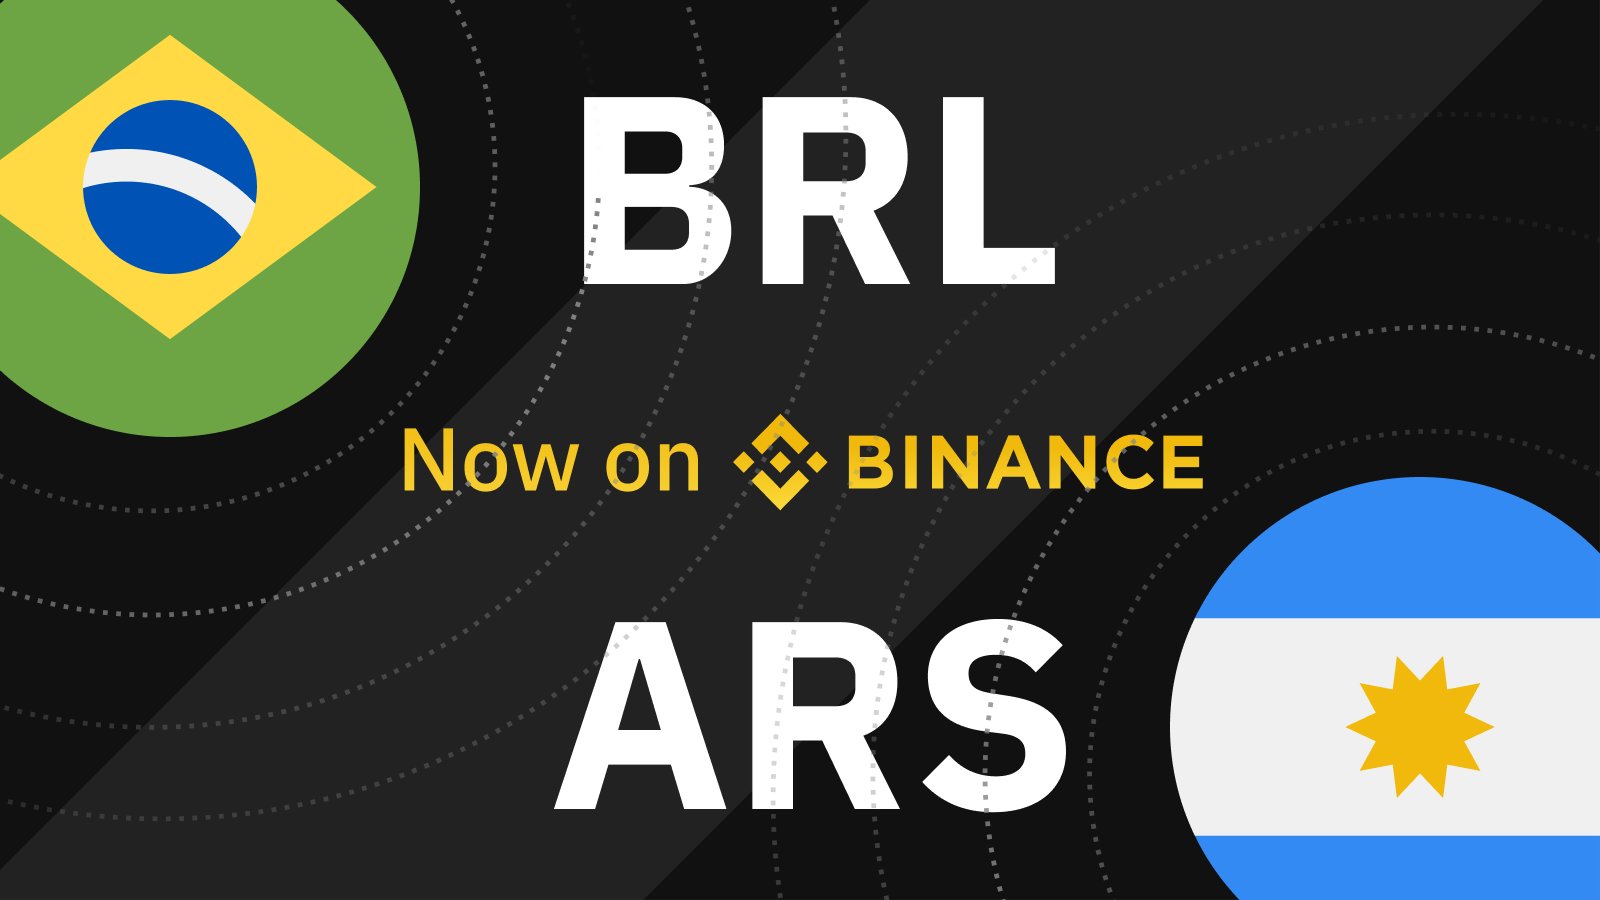 Acheter du Bitcoin sur Binance avec du Real Brésilien (BRL) ou du Peso Argentin (ARS) est désormais possible